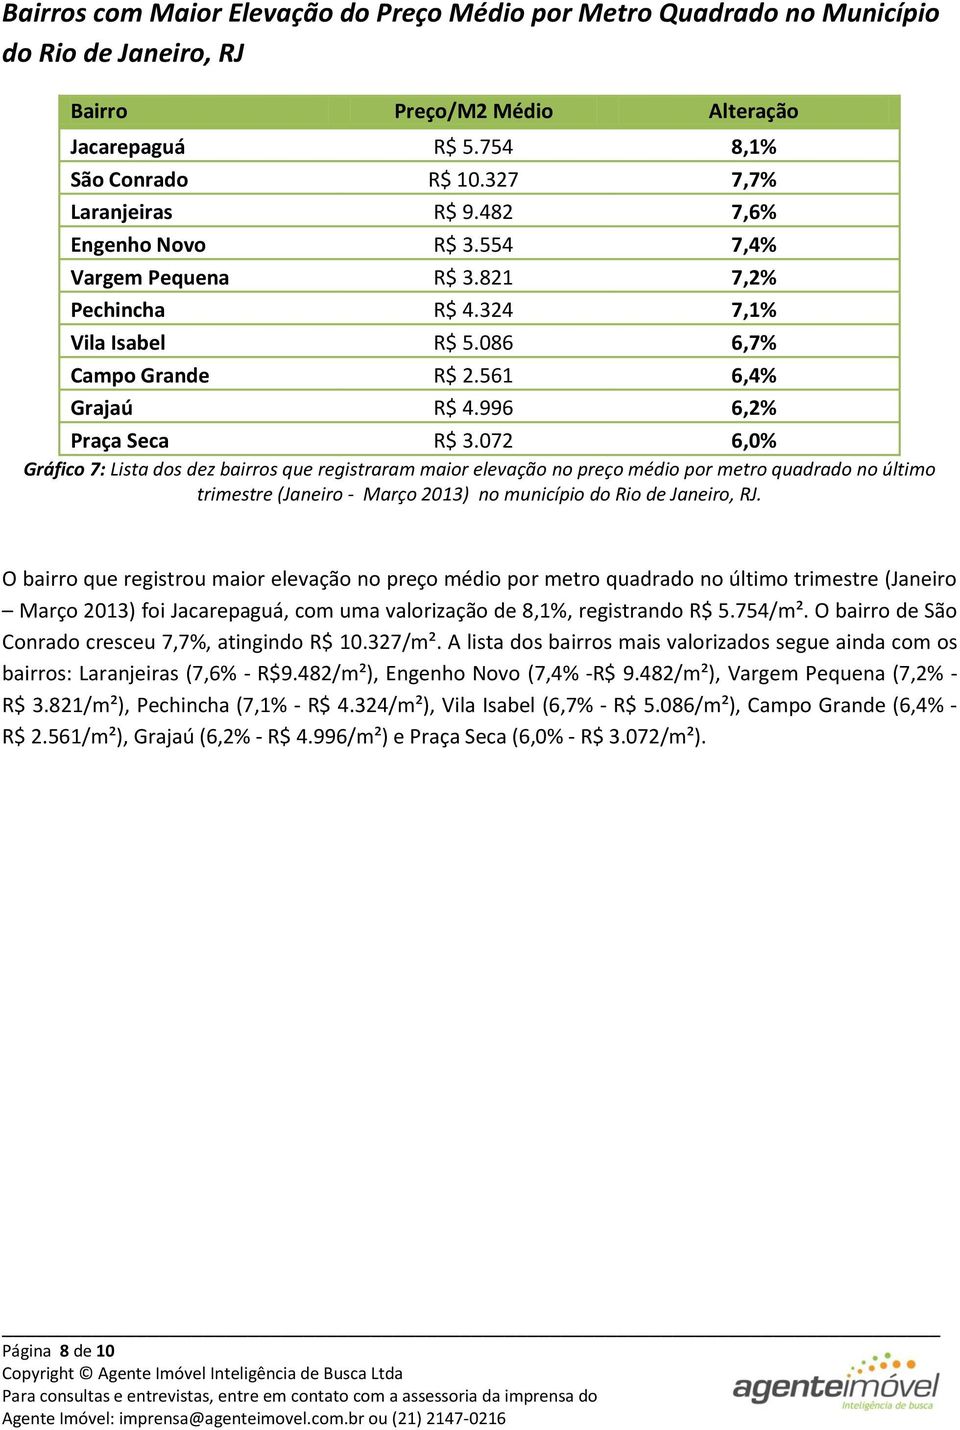 072 6,0% Gráfico 7: Lista dos dez bairros que registraram maior elevação no preço médio por metro quadrado no último trimestre (Janeiro - Março 2013) no município do Rio de Janeiro, RJ.